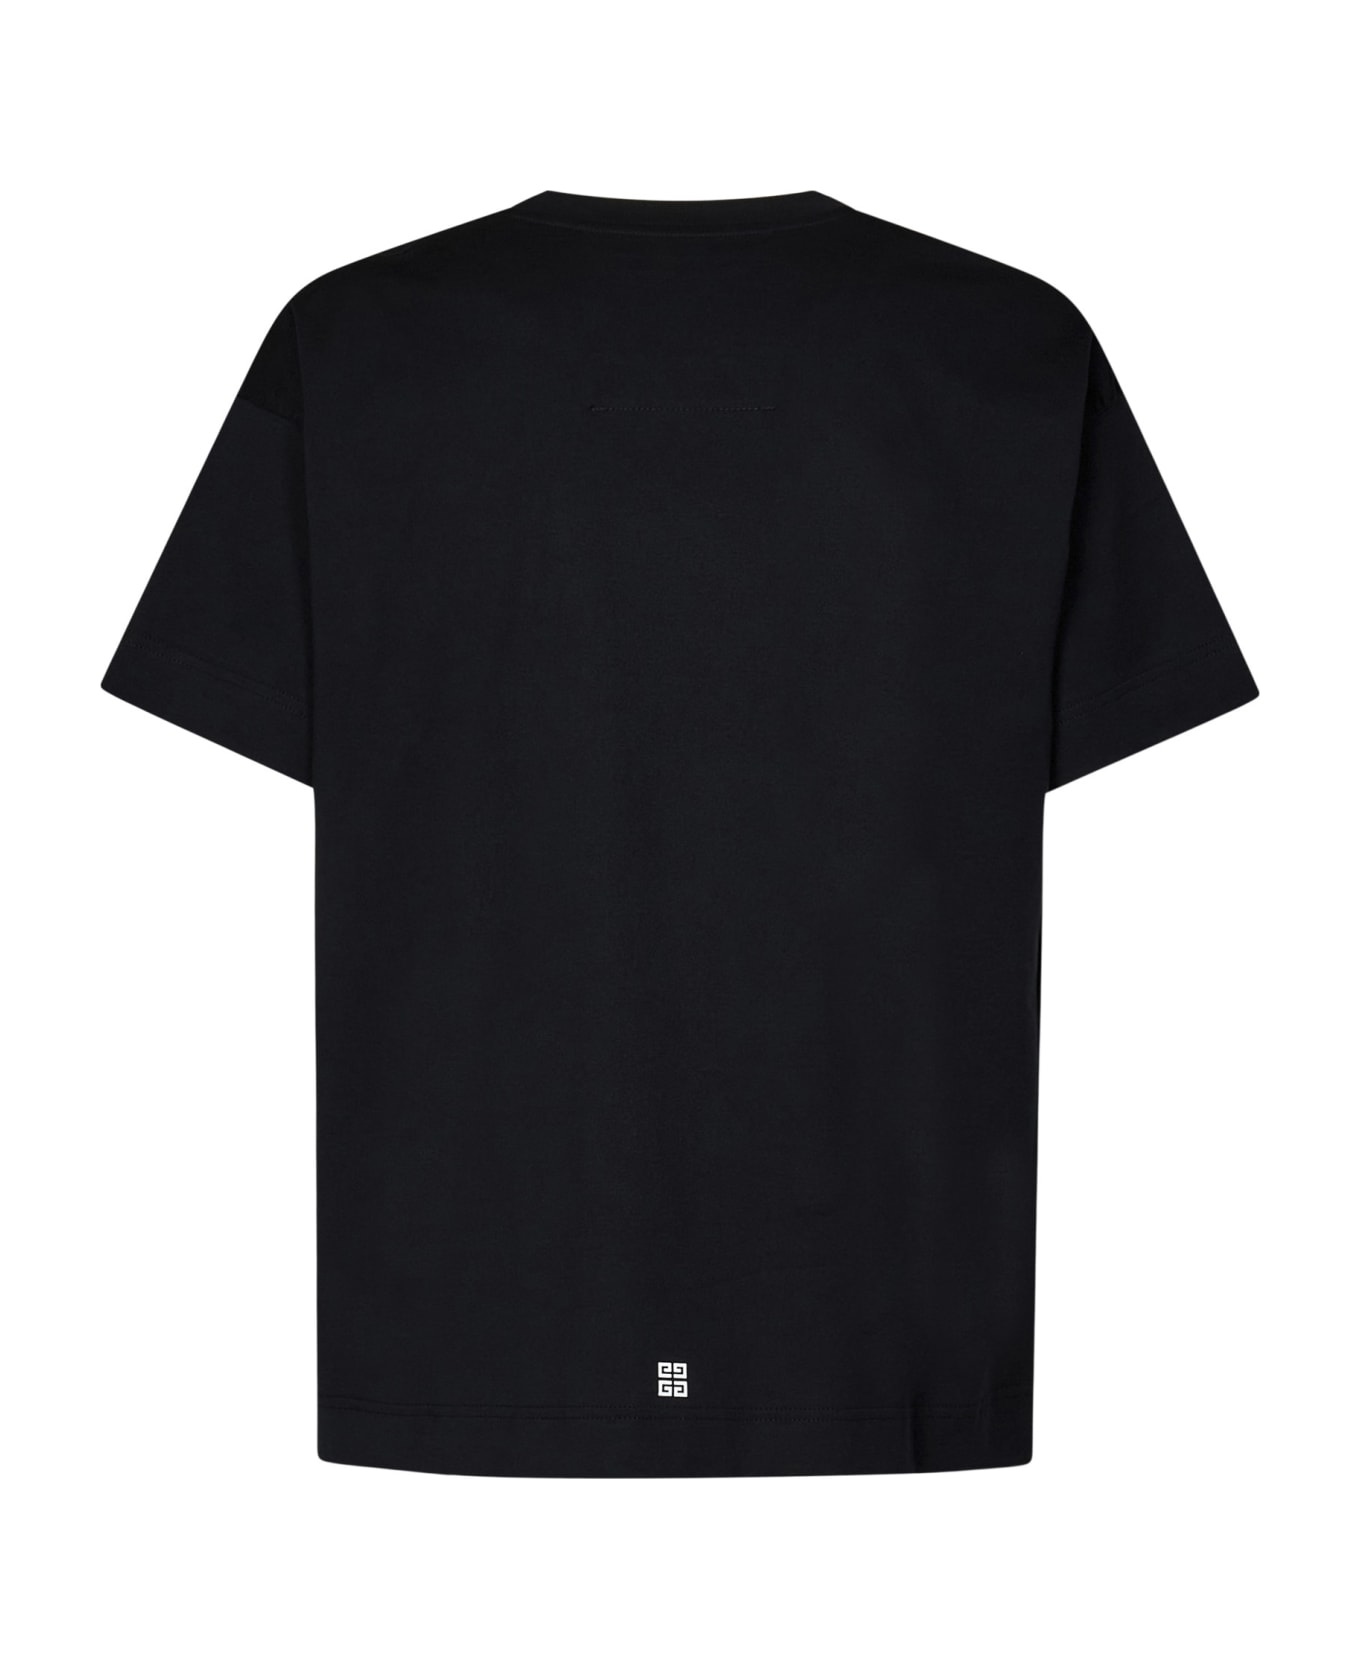 Givenchy T-shirt - Black シャツ